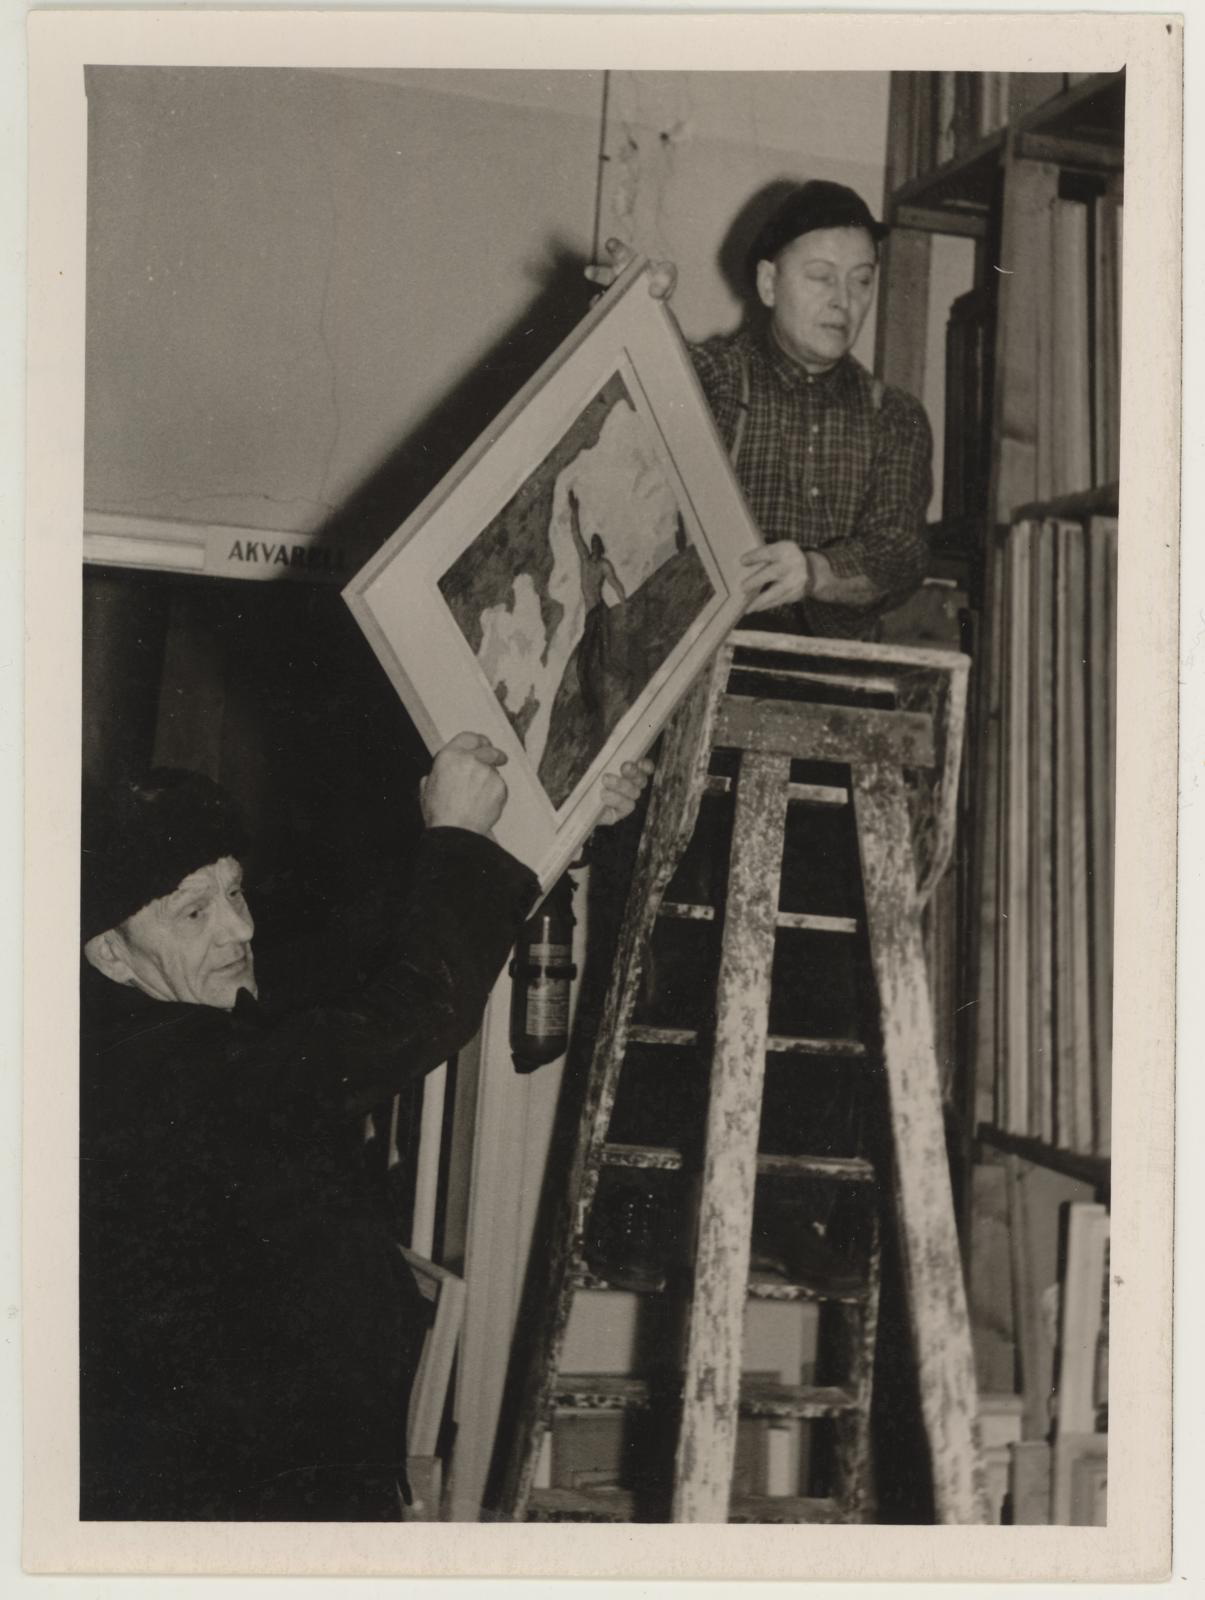 Kristjan Raua teoste pakkimine pärast näituse lõpetamist apr. 1961. Ekspressid: Kroonberg ja Liidimois.